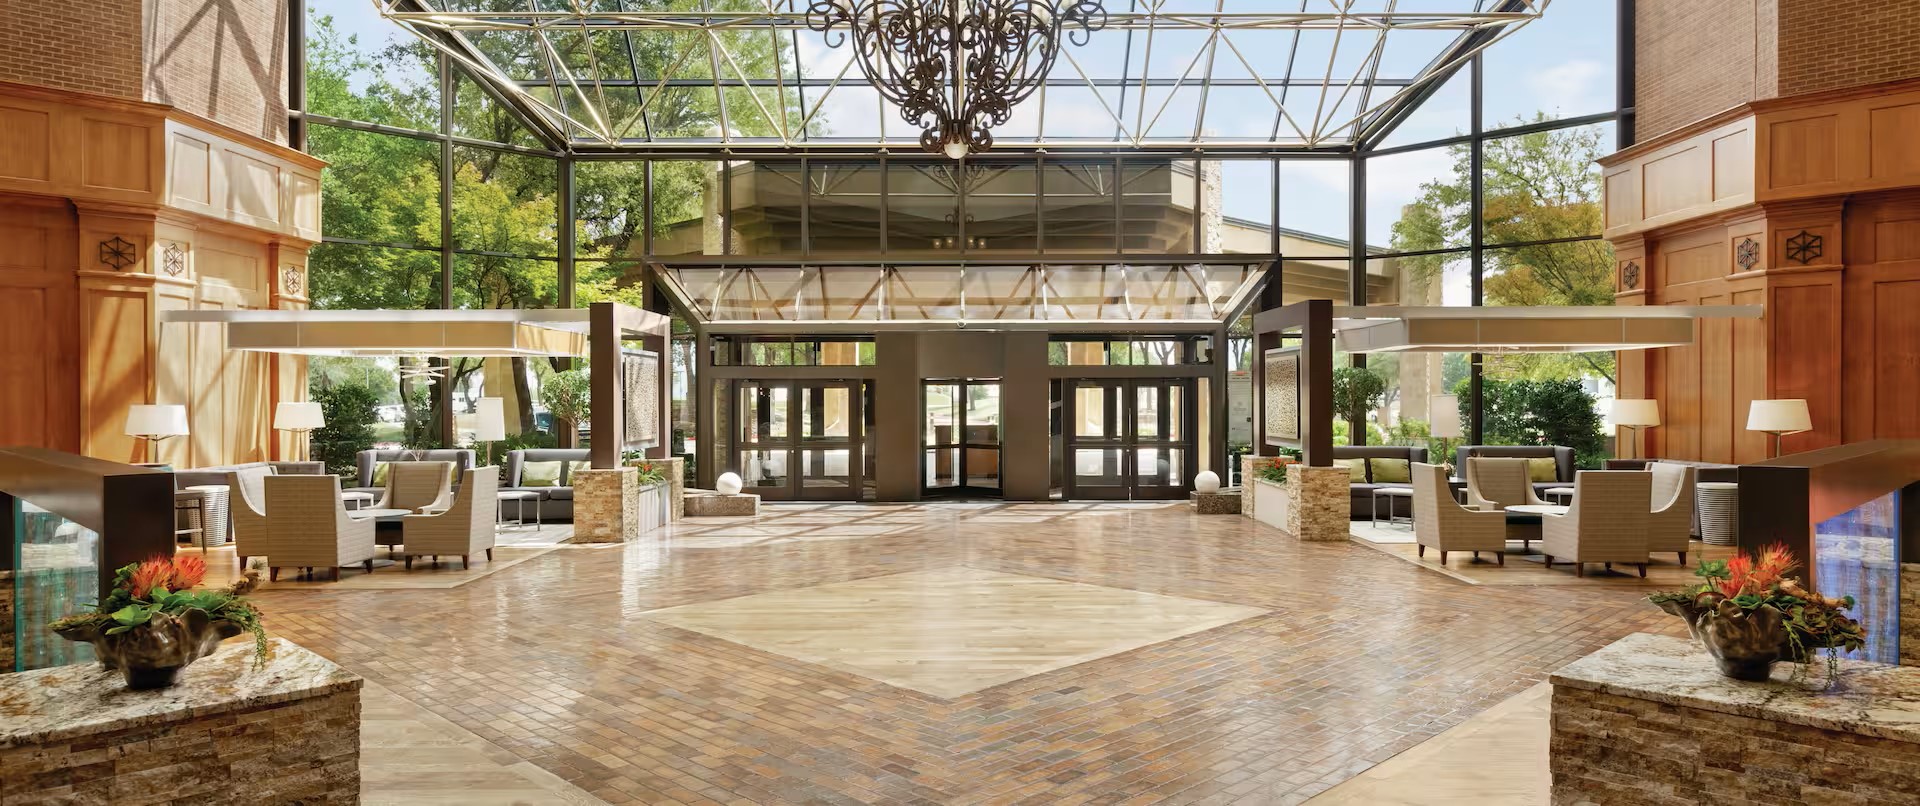 Hilton DFW Lakes Lobby